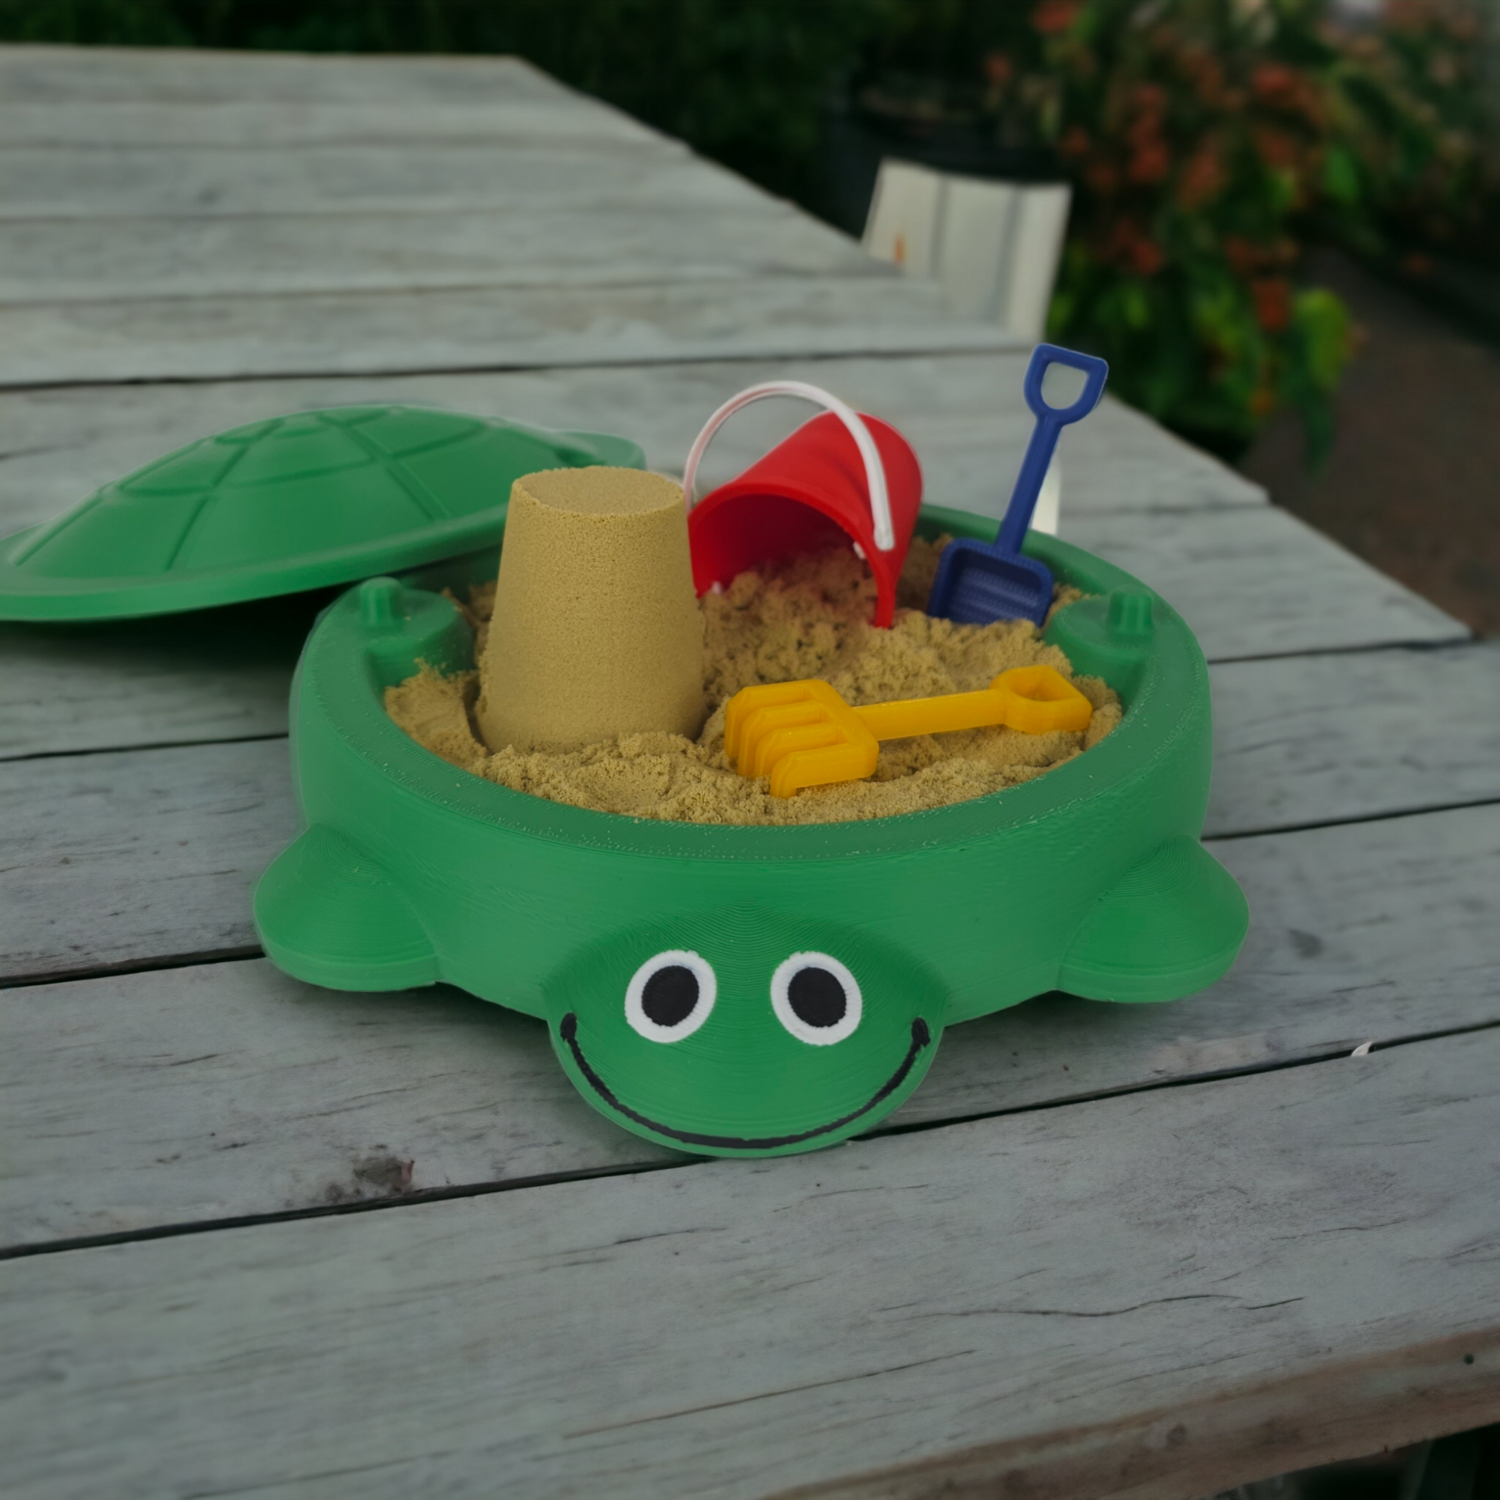 Mini Turtle Sandbox - With Real Sand & Mini Tools